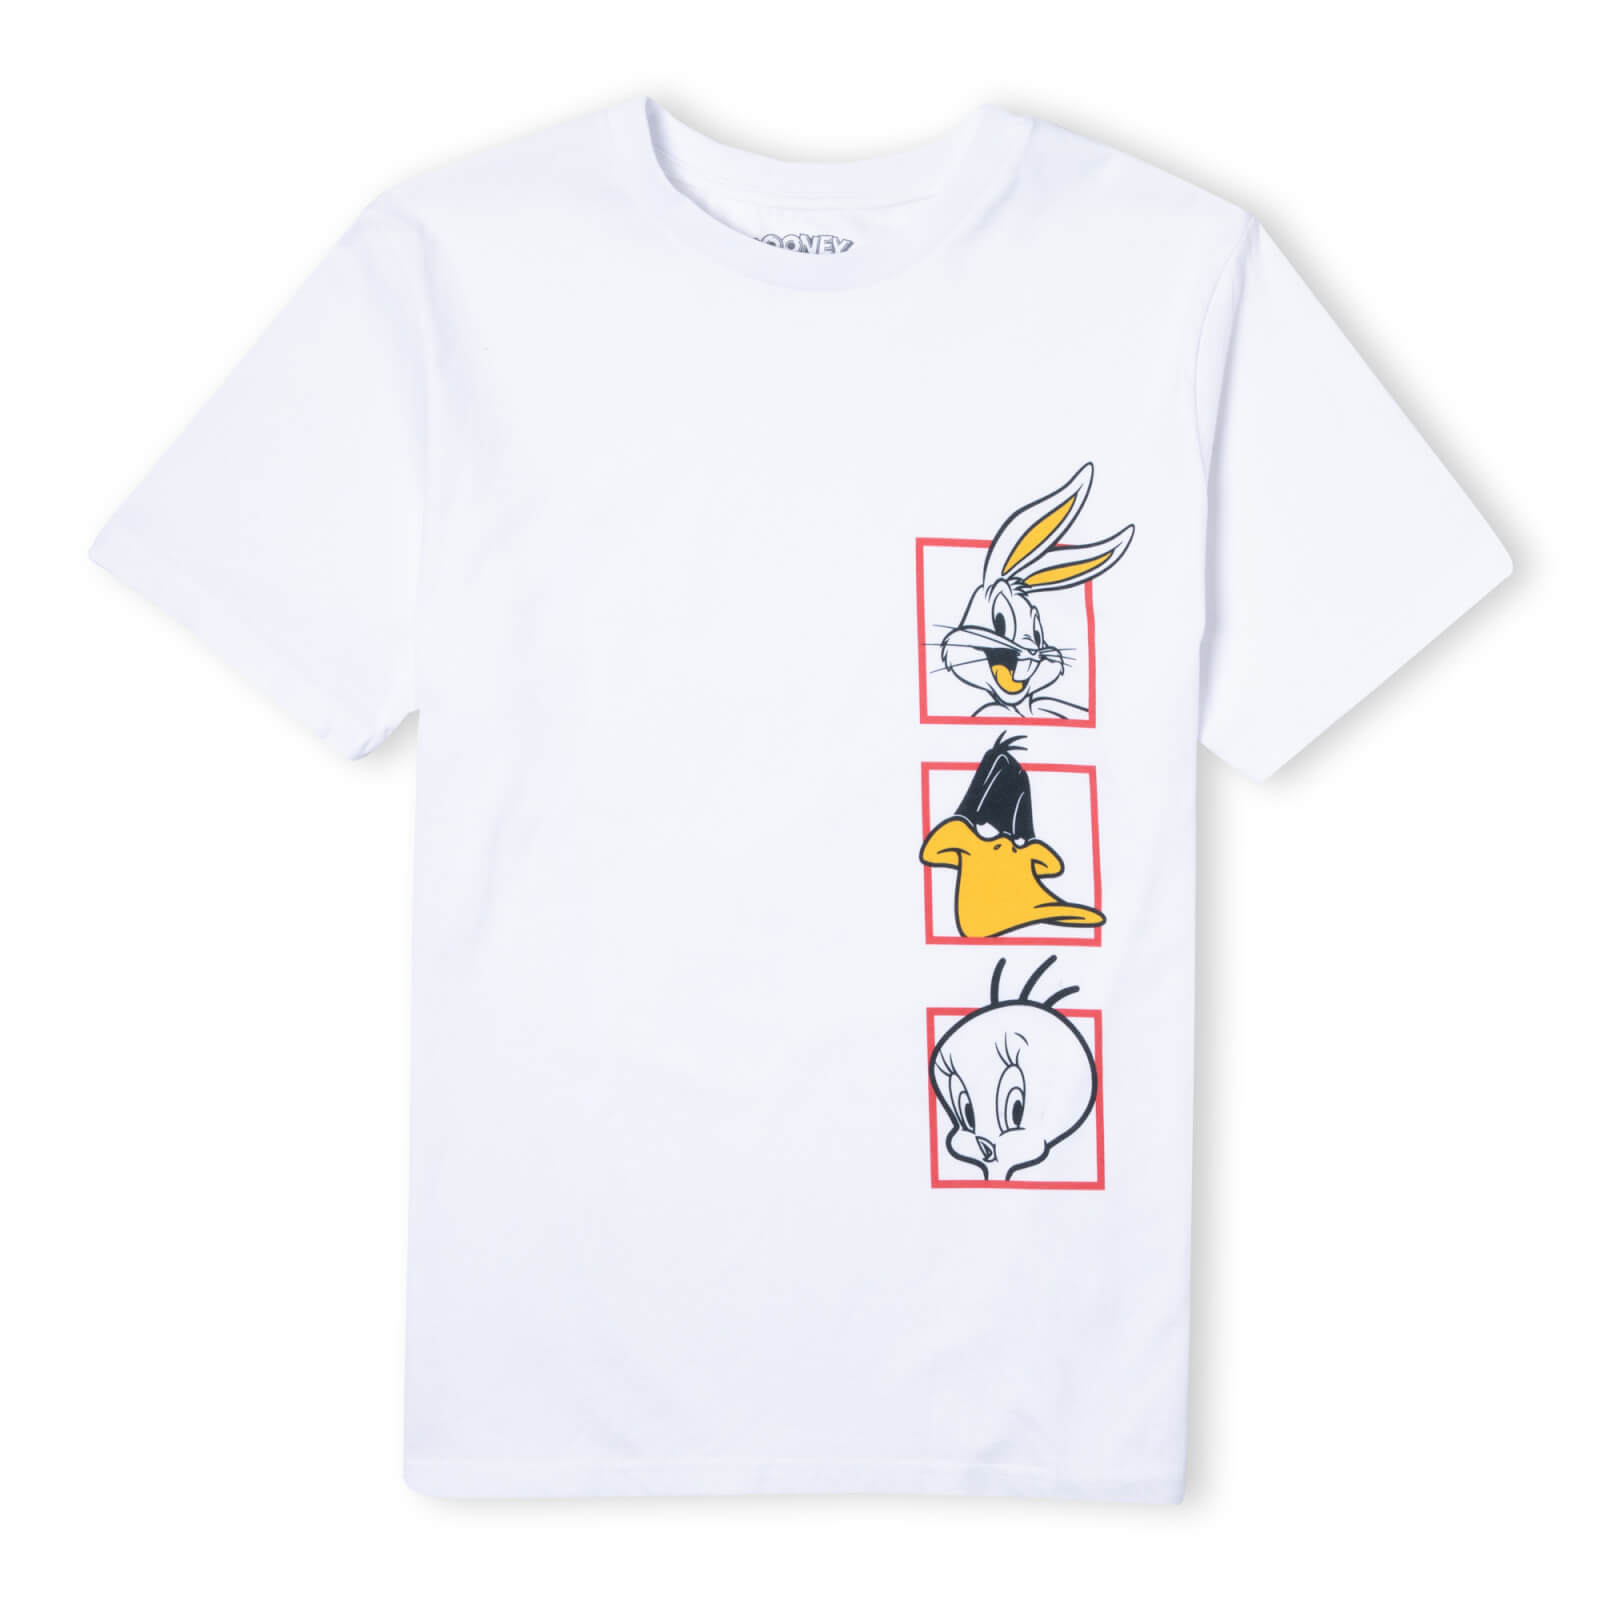 Looney Tunes Bugs Bunny, Daffy Duck, Tweety Pie Kids' T-Shirt - White - 3-4 Years - White